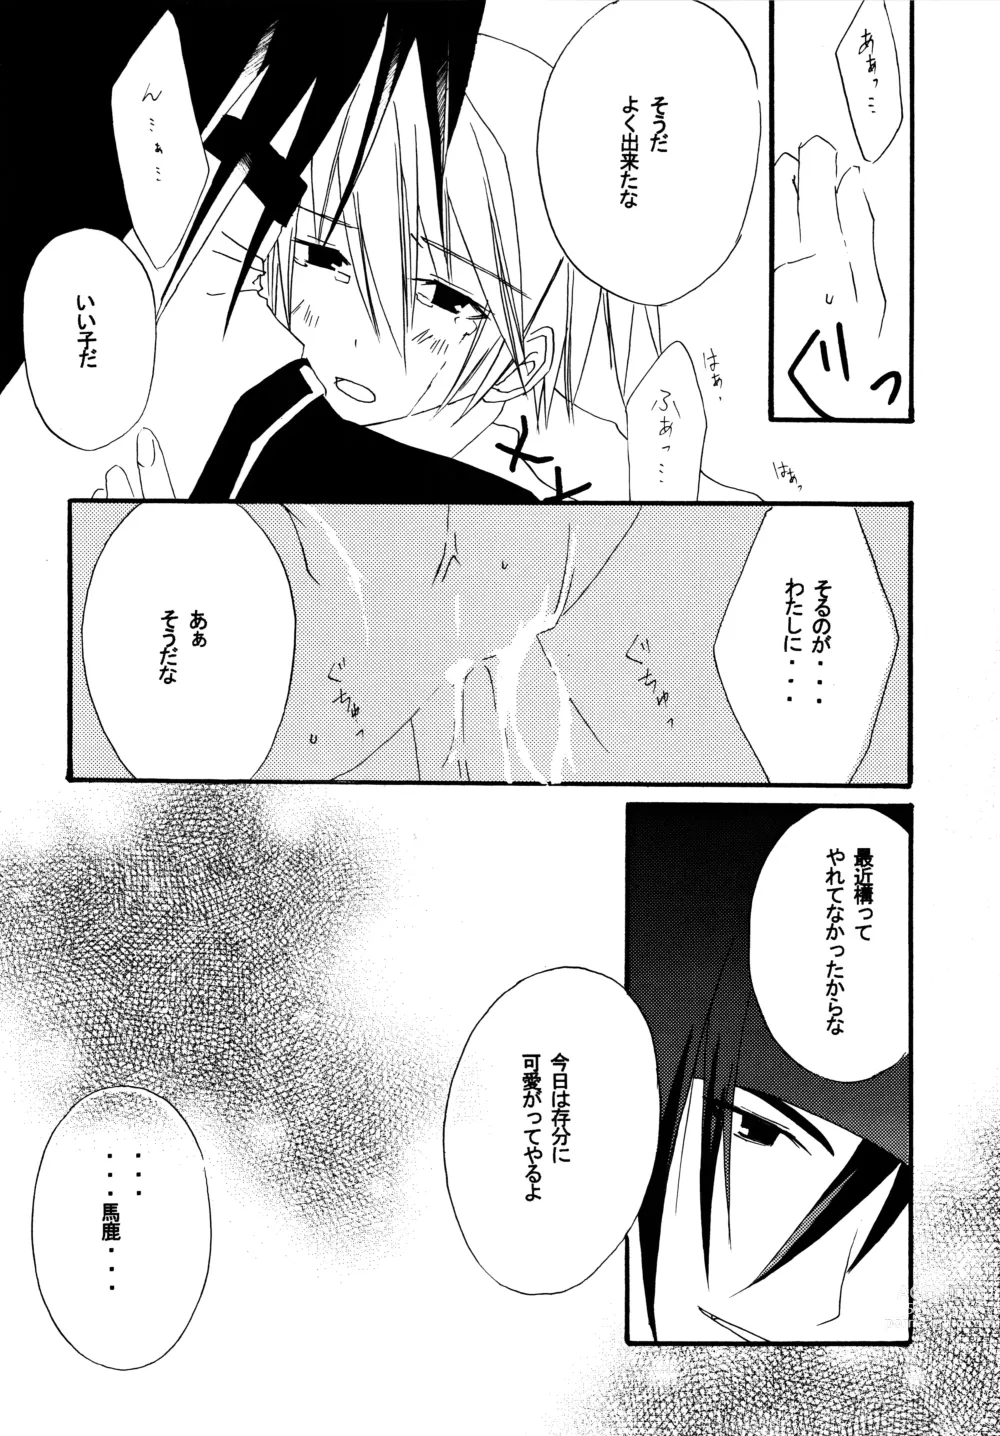 Page 19 of doujinshi Zettai Ryouiki ~Absolute Area~